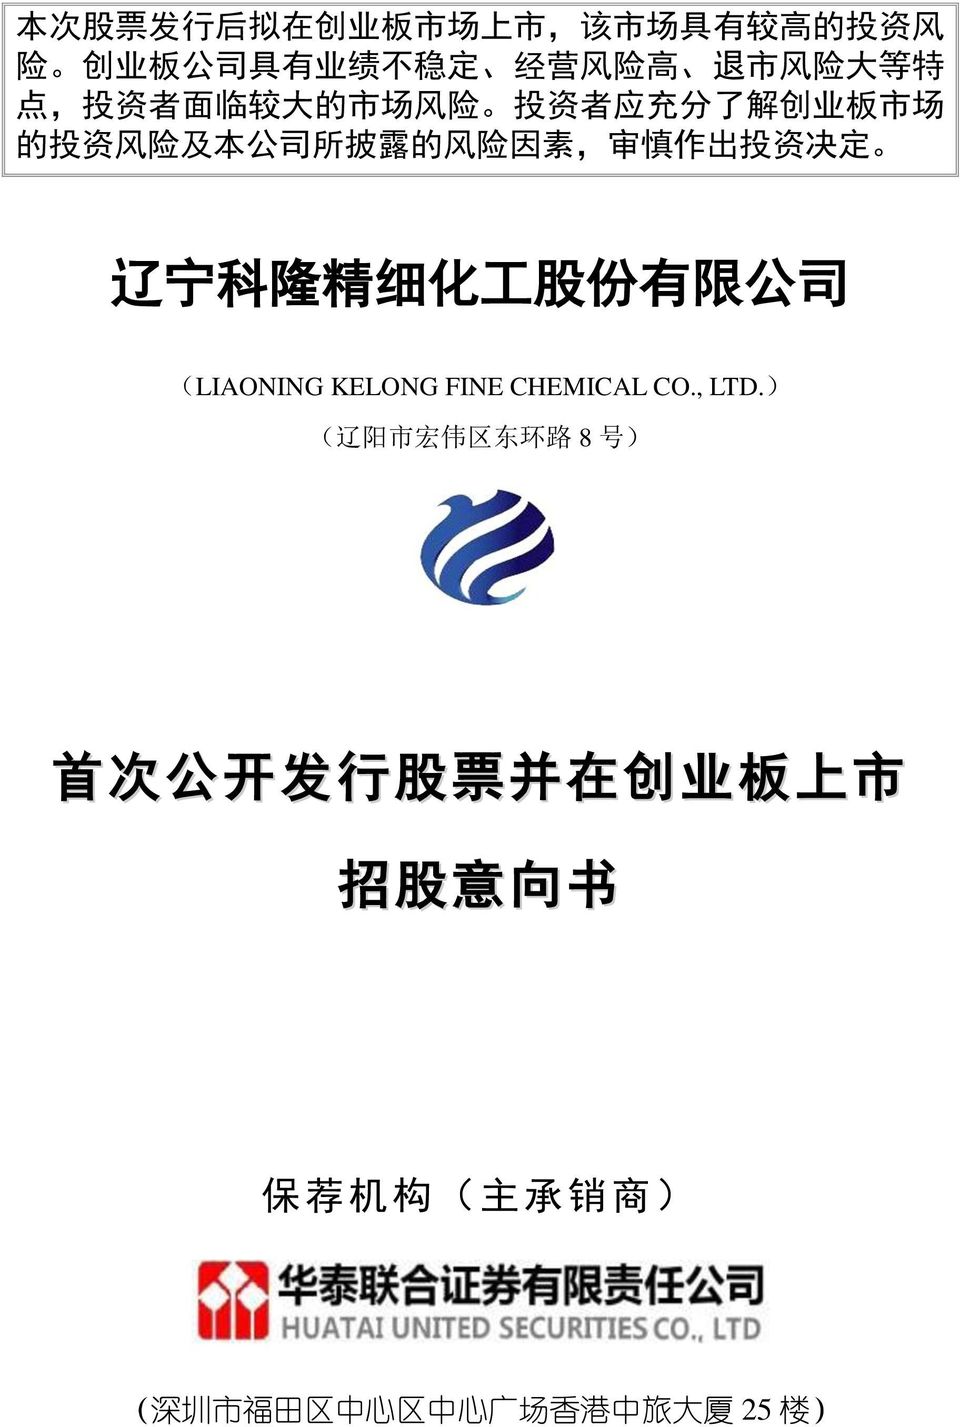 决 定 辽 宁 科 隆 精 细 化 工 股 份 有 限 公 司 (LIAONING KELONG FINE CHEMICAL CO., LTD.